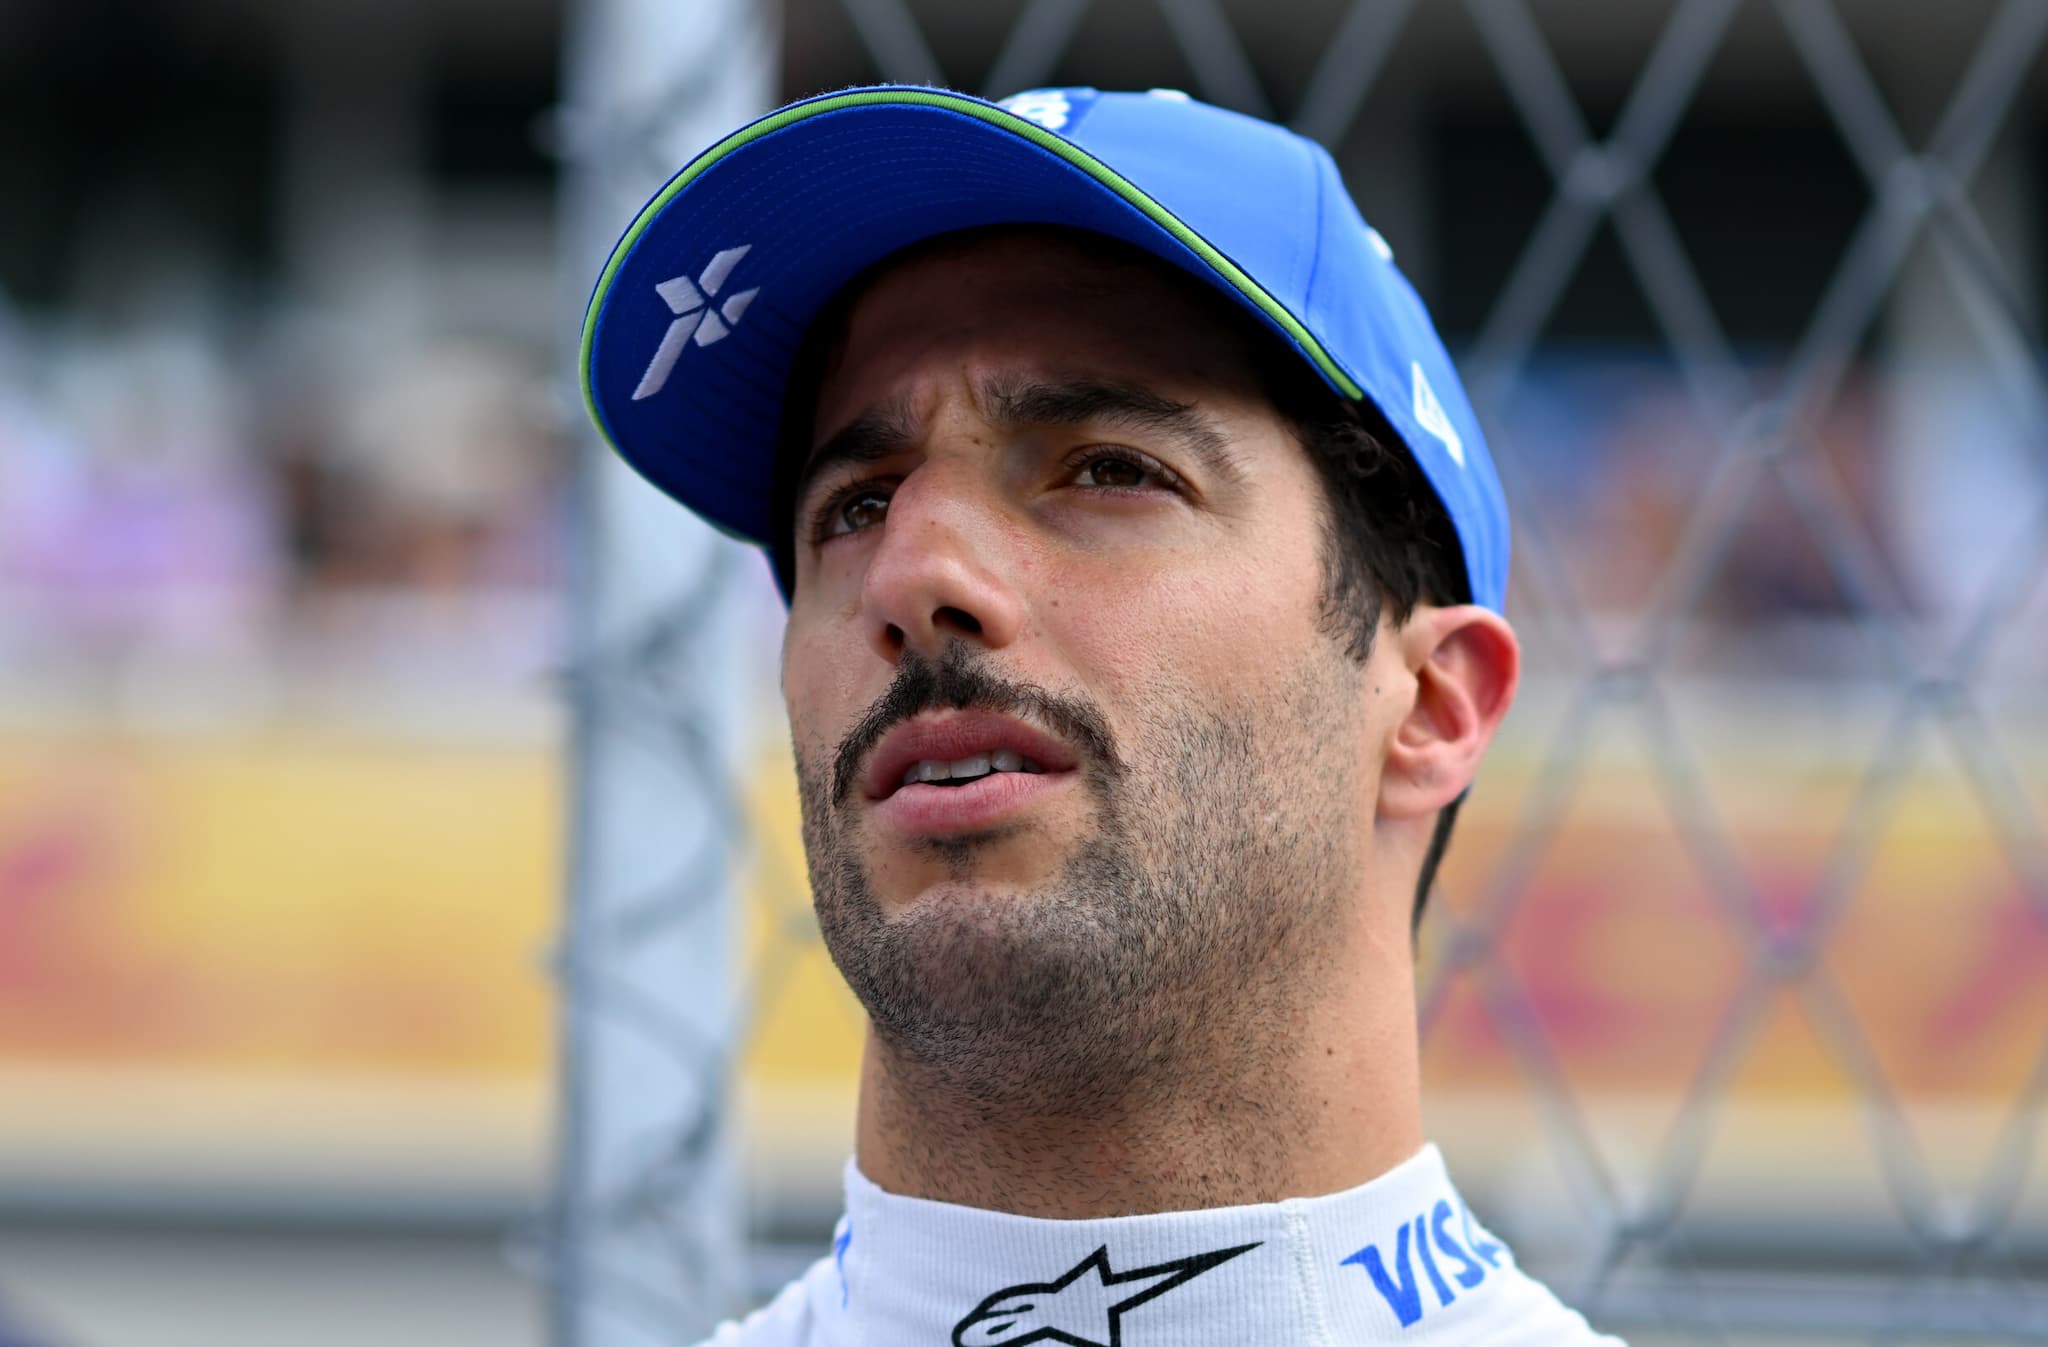 Villeneuve zmieszał Ricciardo z błotem: Dlaczego on nadal jest w F1? 